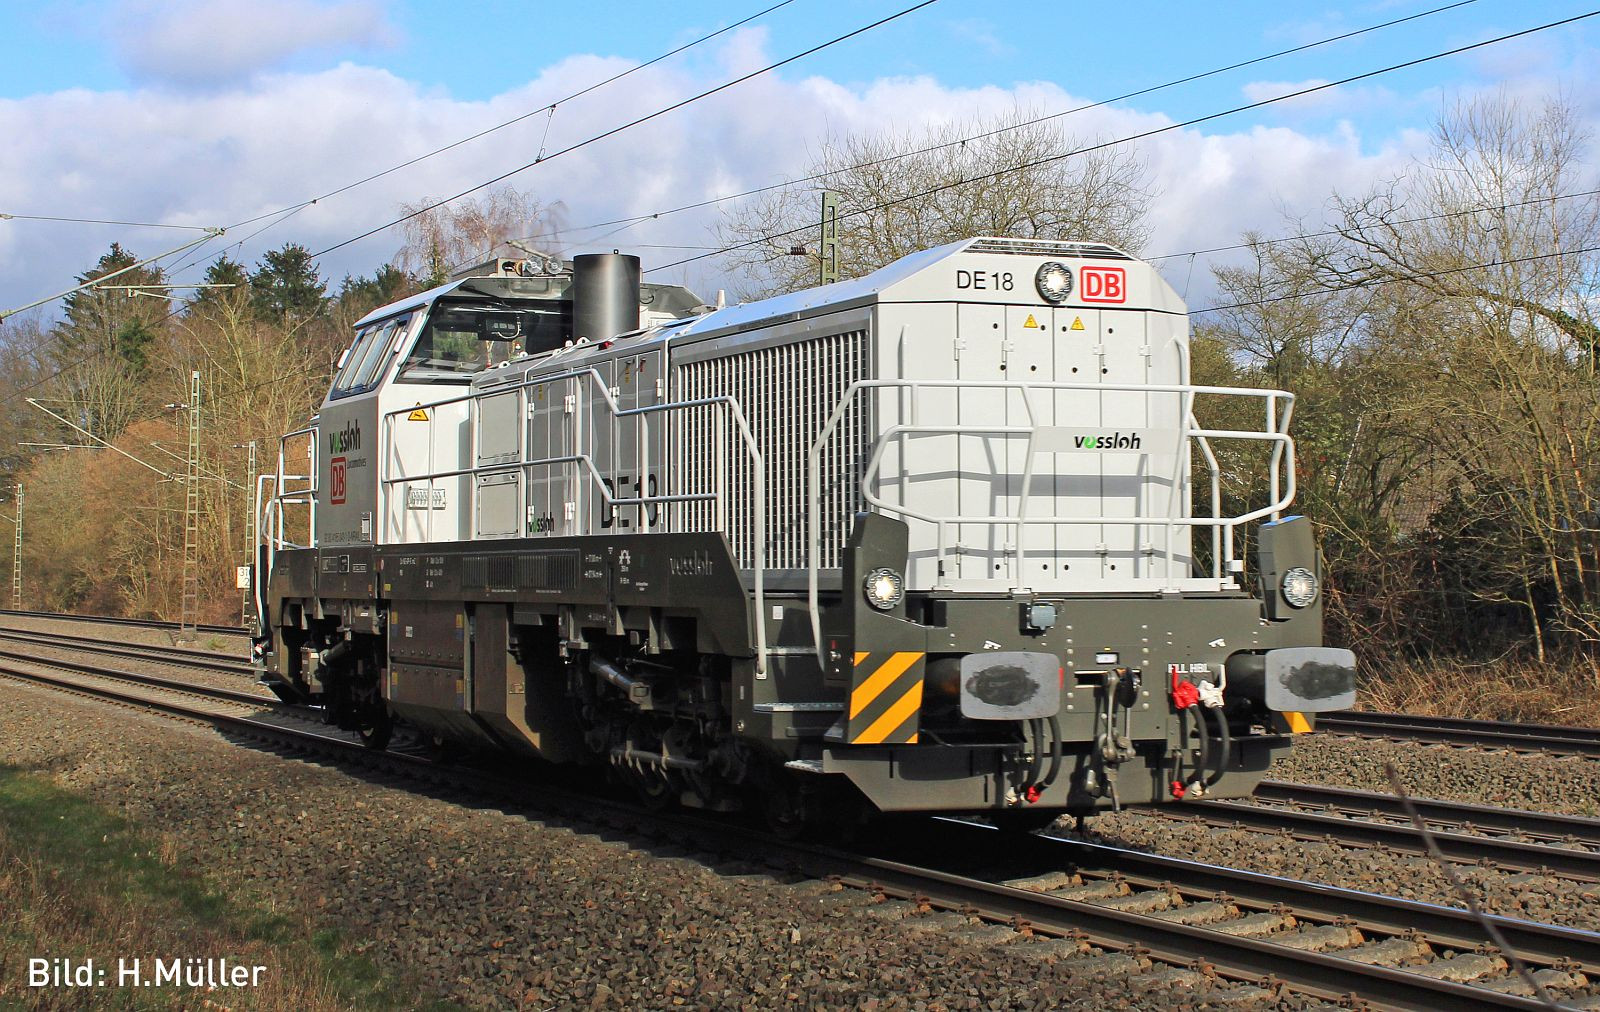 *DB Cargo DE18 Diesel Locomotive VI